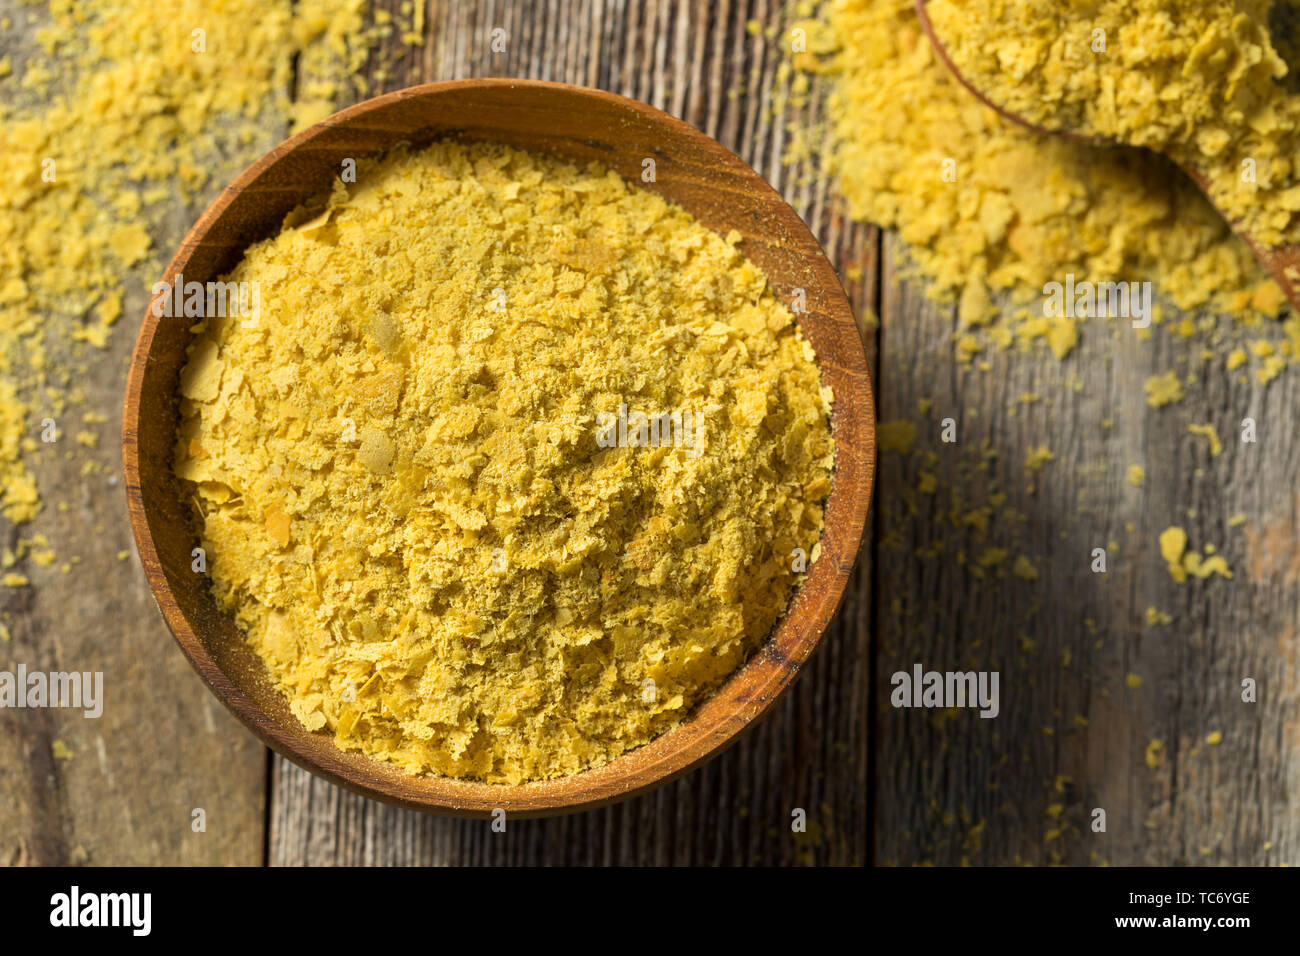 Materie organico giallo lievito nutrizionale in una ciotola Foto Stock